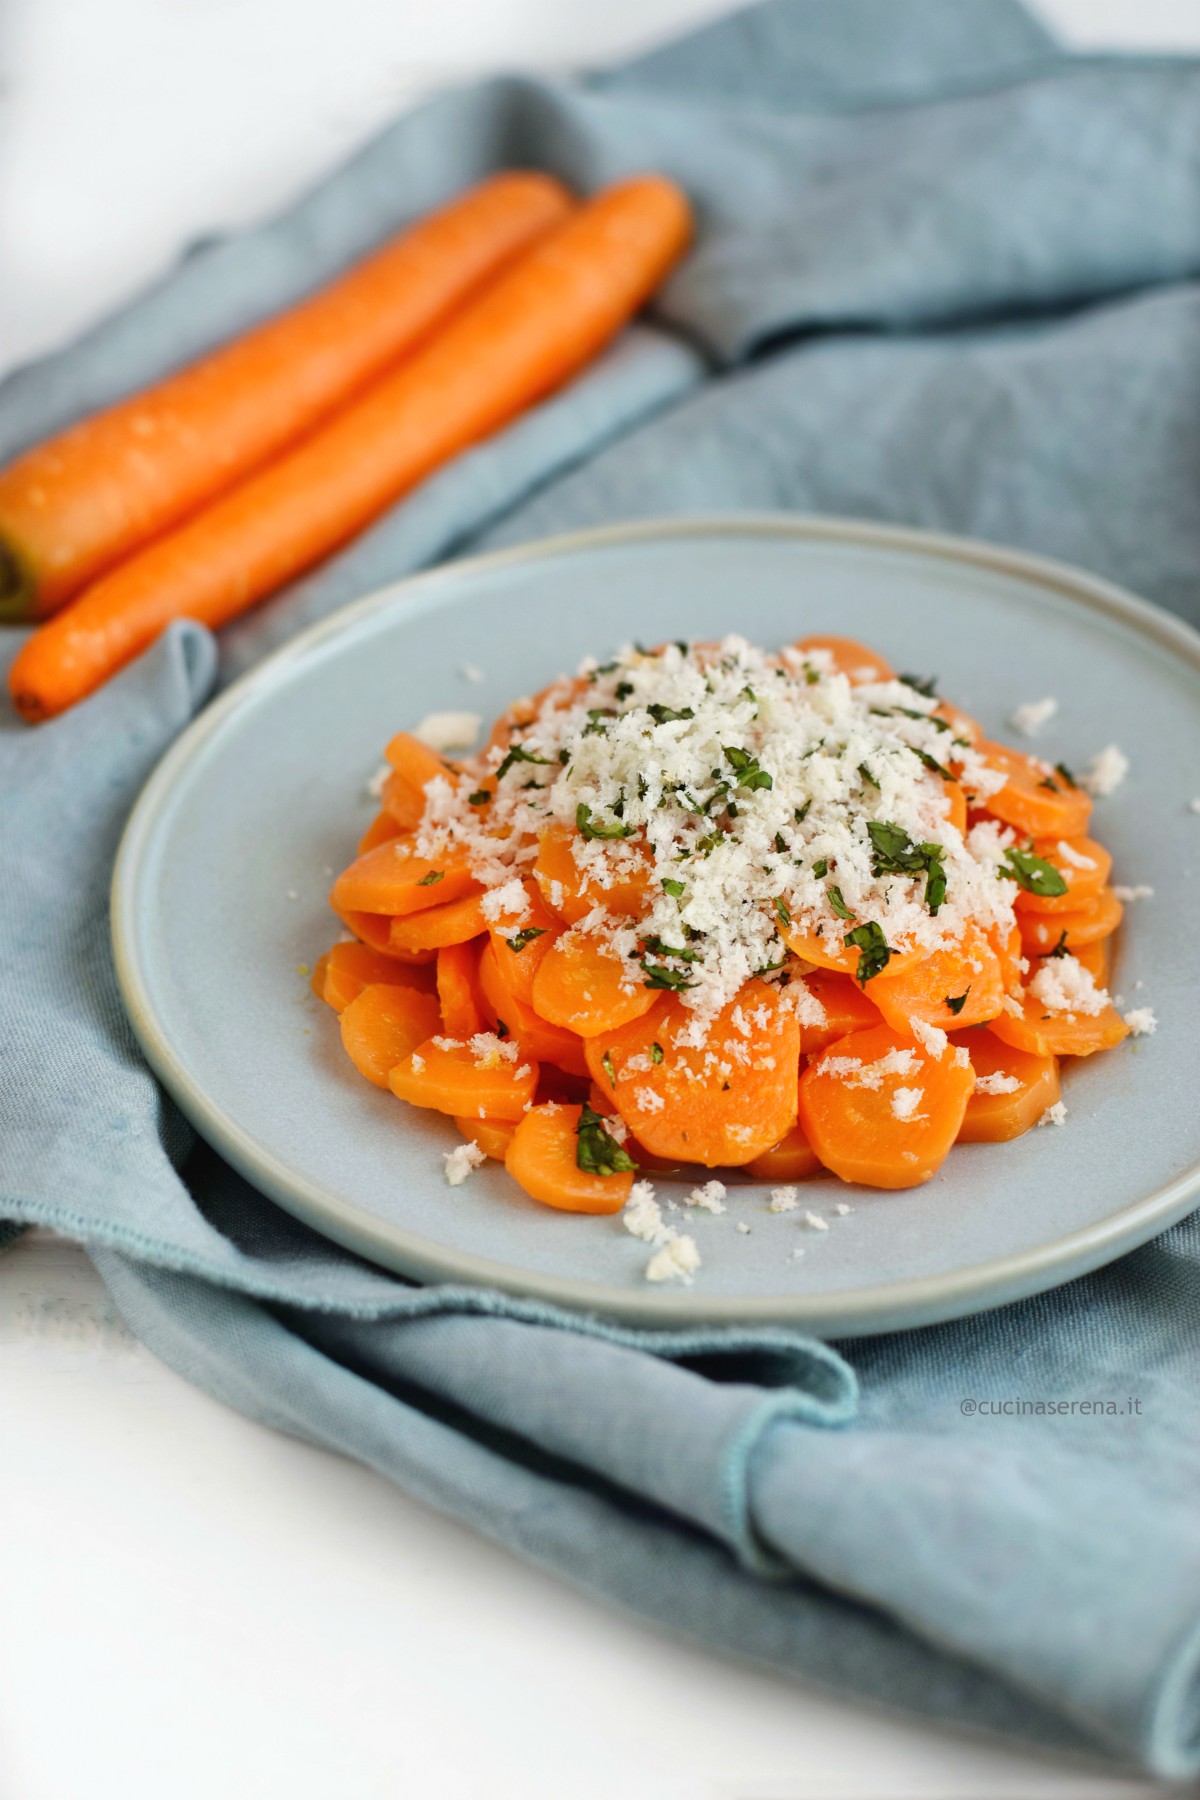 Carote ammollicate è un piatto tipico calabrese a base di carote lesse condite con pane ammorbidito nell'aceto